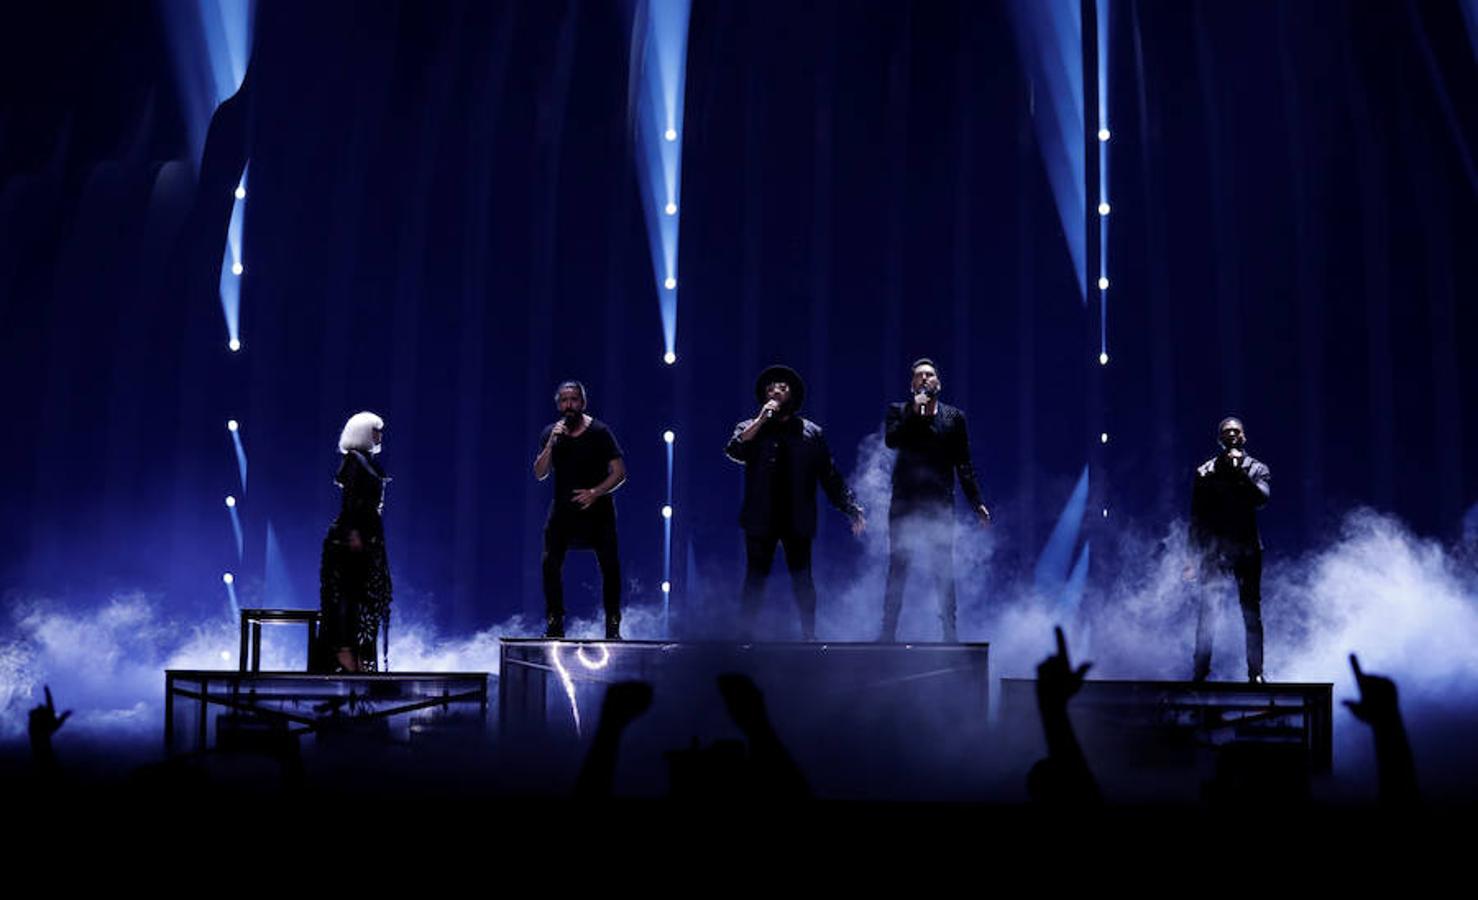 Románticos, clásicos, espectaculares, estrafalarios... los ensayos de Eurovisión 2018 dan para mucho. Aquí una muestra. BULGARIA